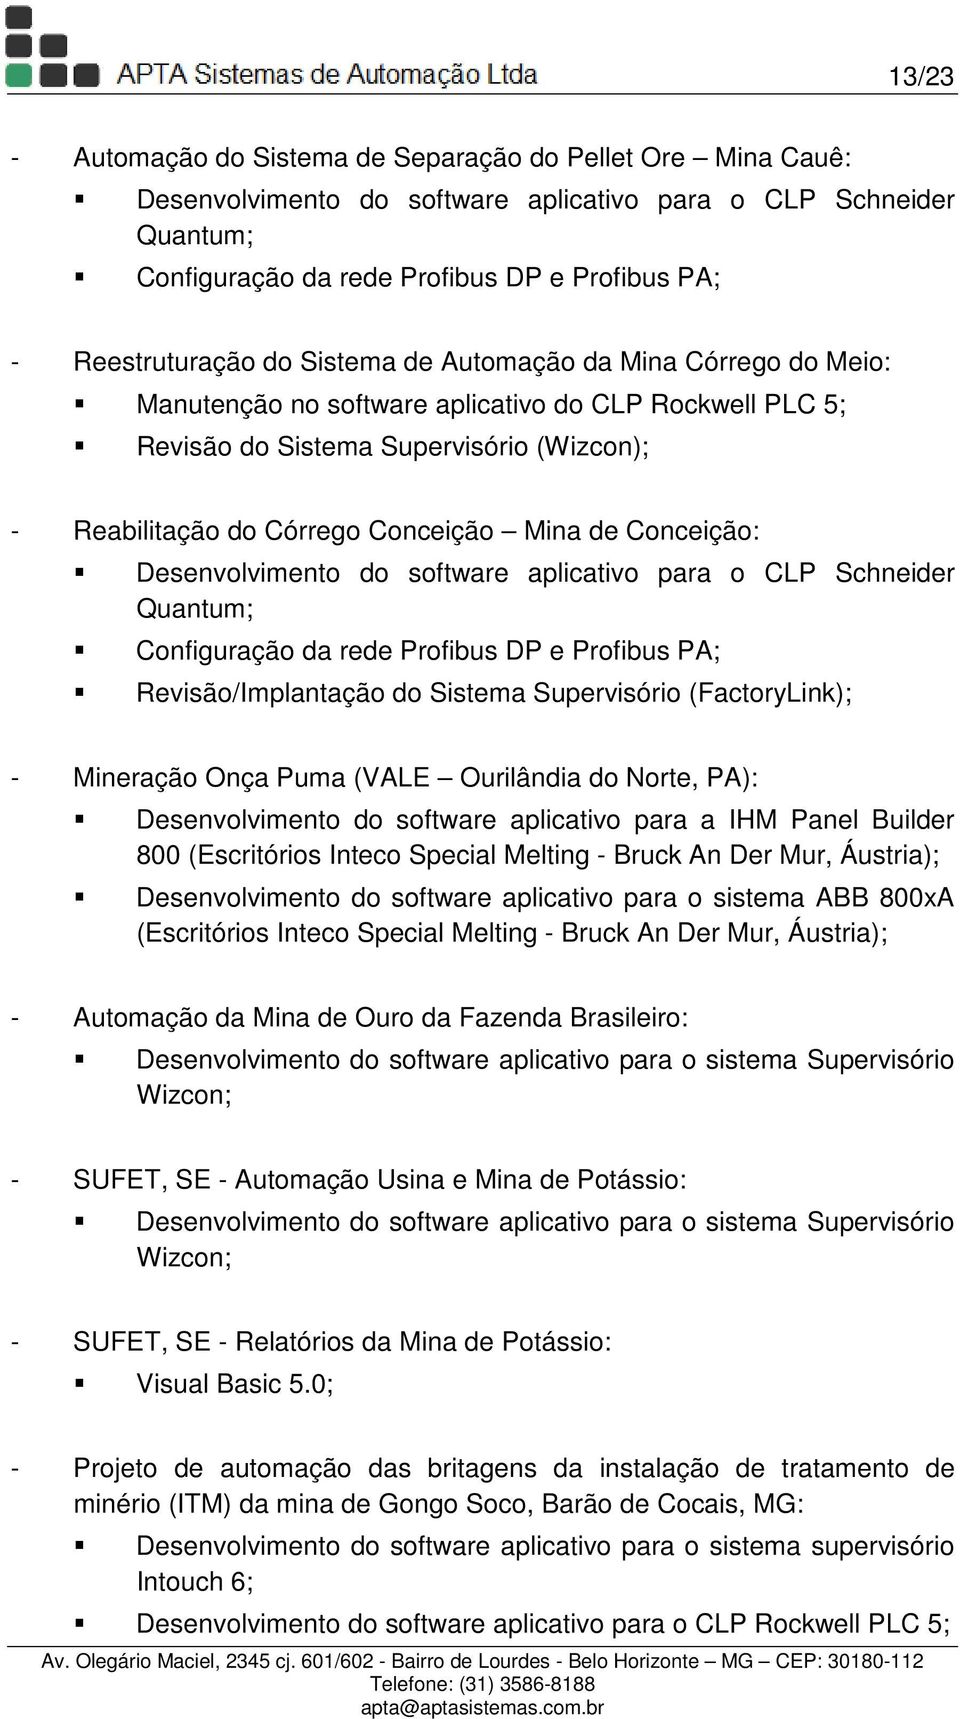 Mina de Conceição: Desenvolvimento do software aplicativo para o CLP Schneider Quantum; Configuração da rede Profibus DP e Profibus PA; Revisão/Implantação do Sistema Supervisório (FactoryLink); -